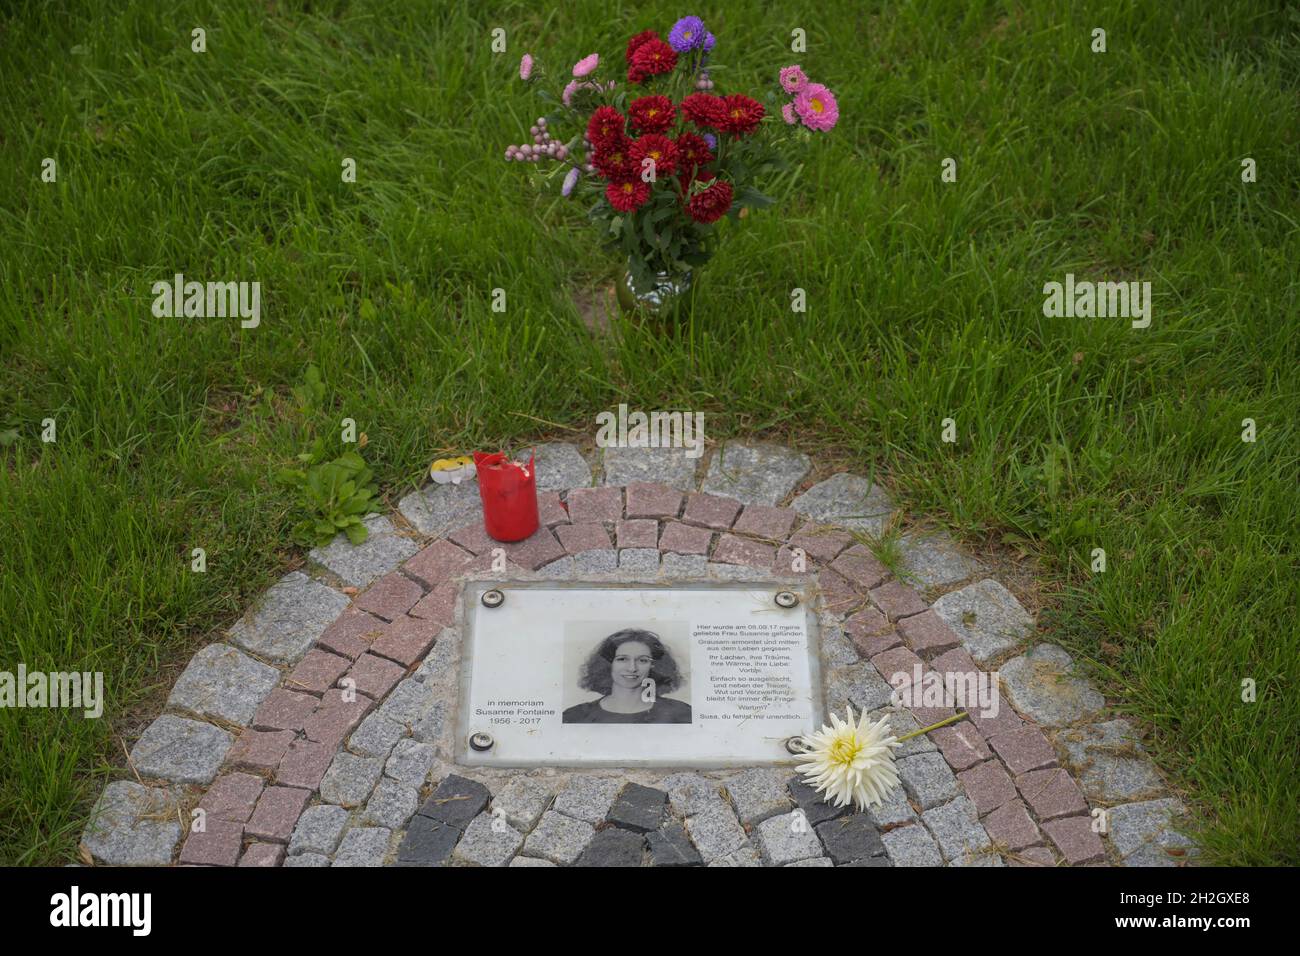 Gedenken Mordopfer Susanne Fontaine, Hardenbergplatz, Tiergarten, Mitte, Berlin, Deutschland Stock Photo